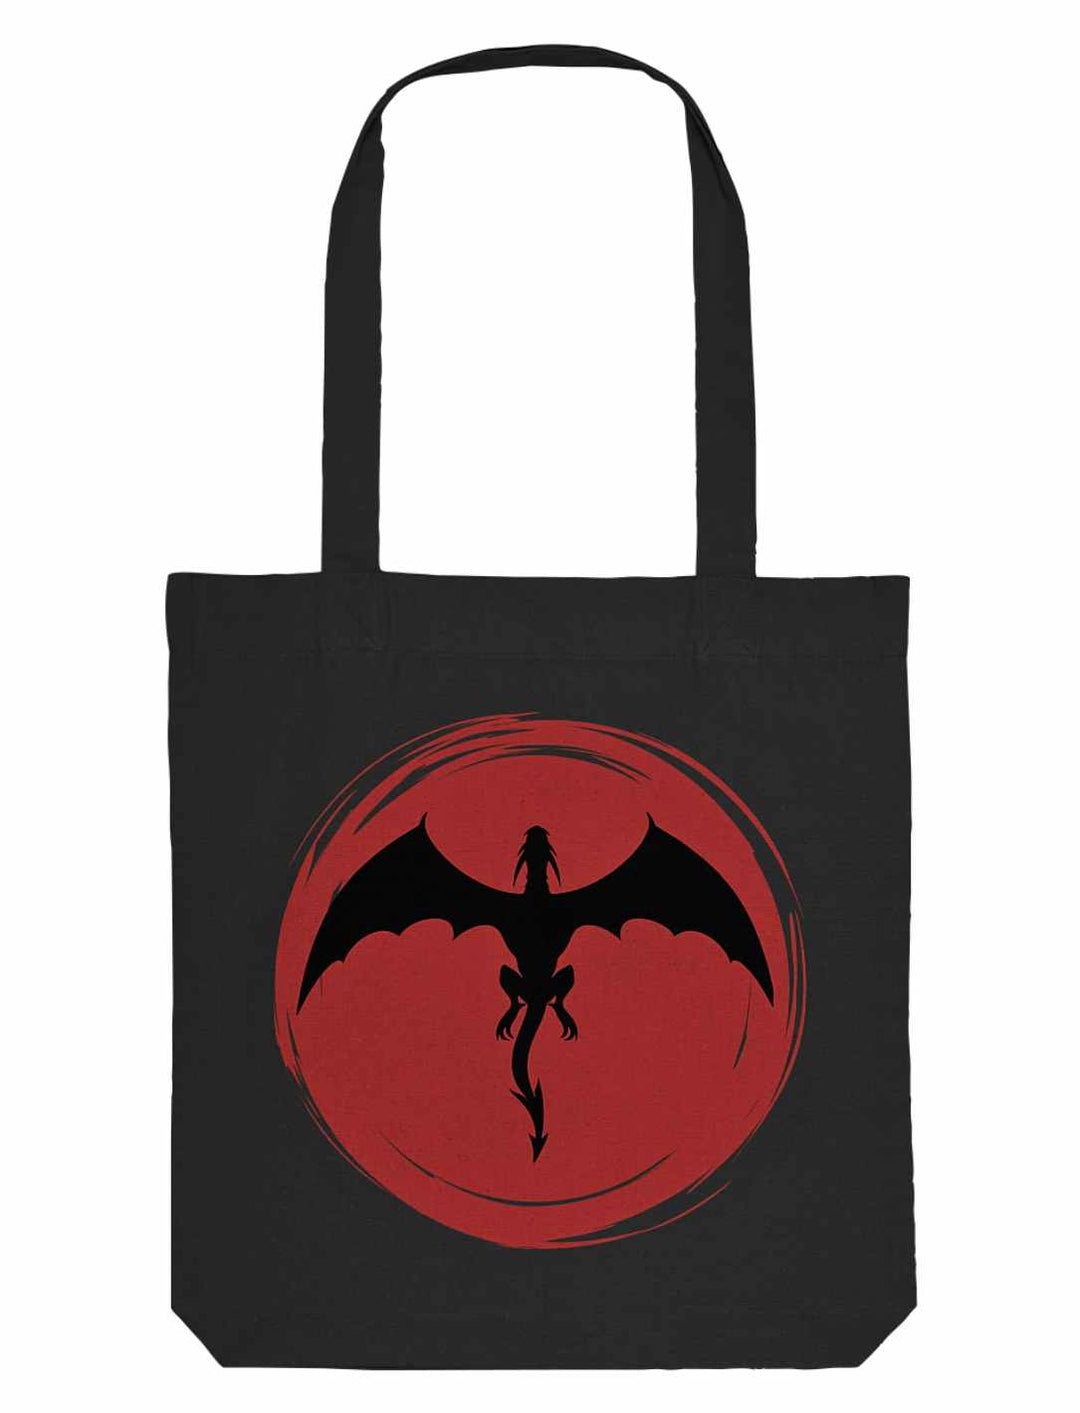 Schwarze Organic Tote Bag von Runental mit auffälligem 'Saga of the Dragon'-Design, verbindet alltägliche Funktionalität mit einem Hauch von alter Mythologie.